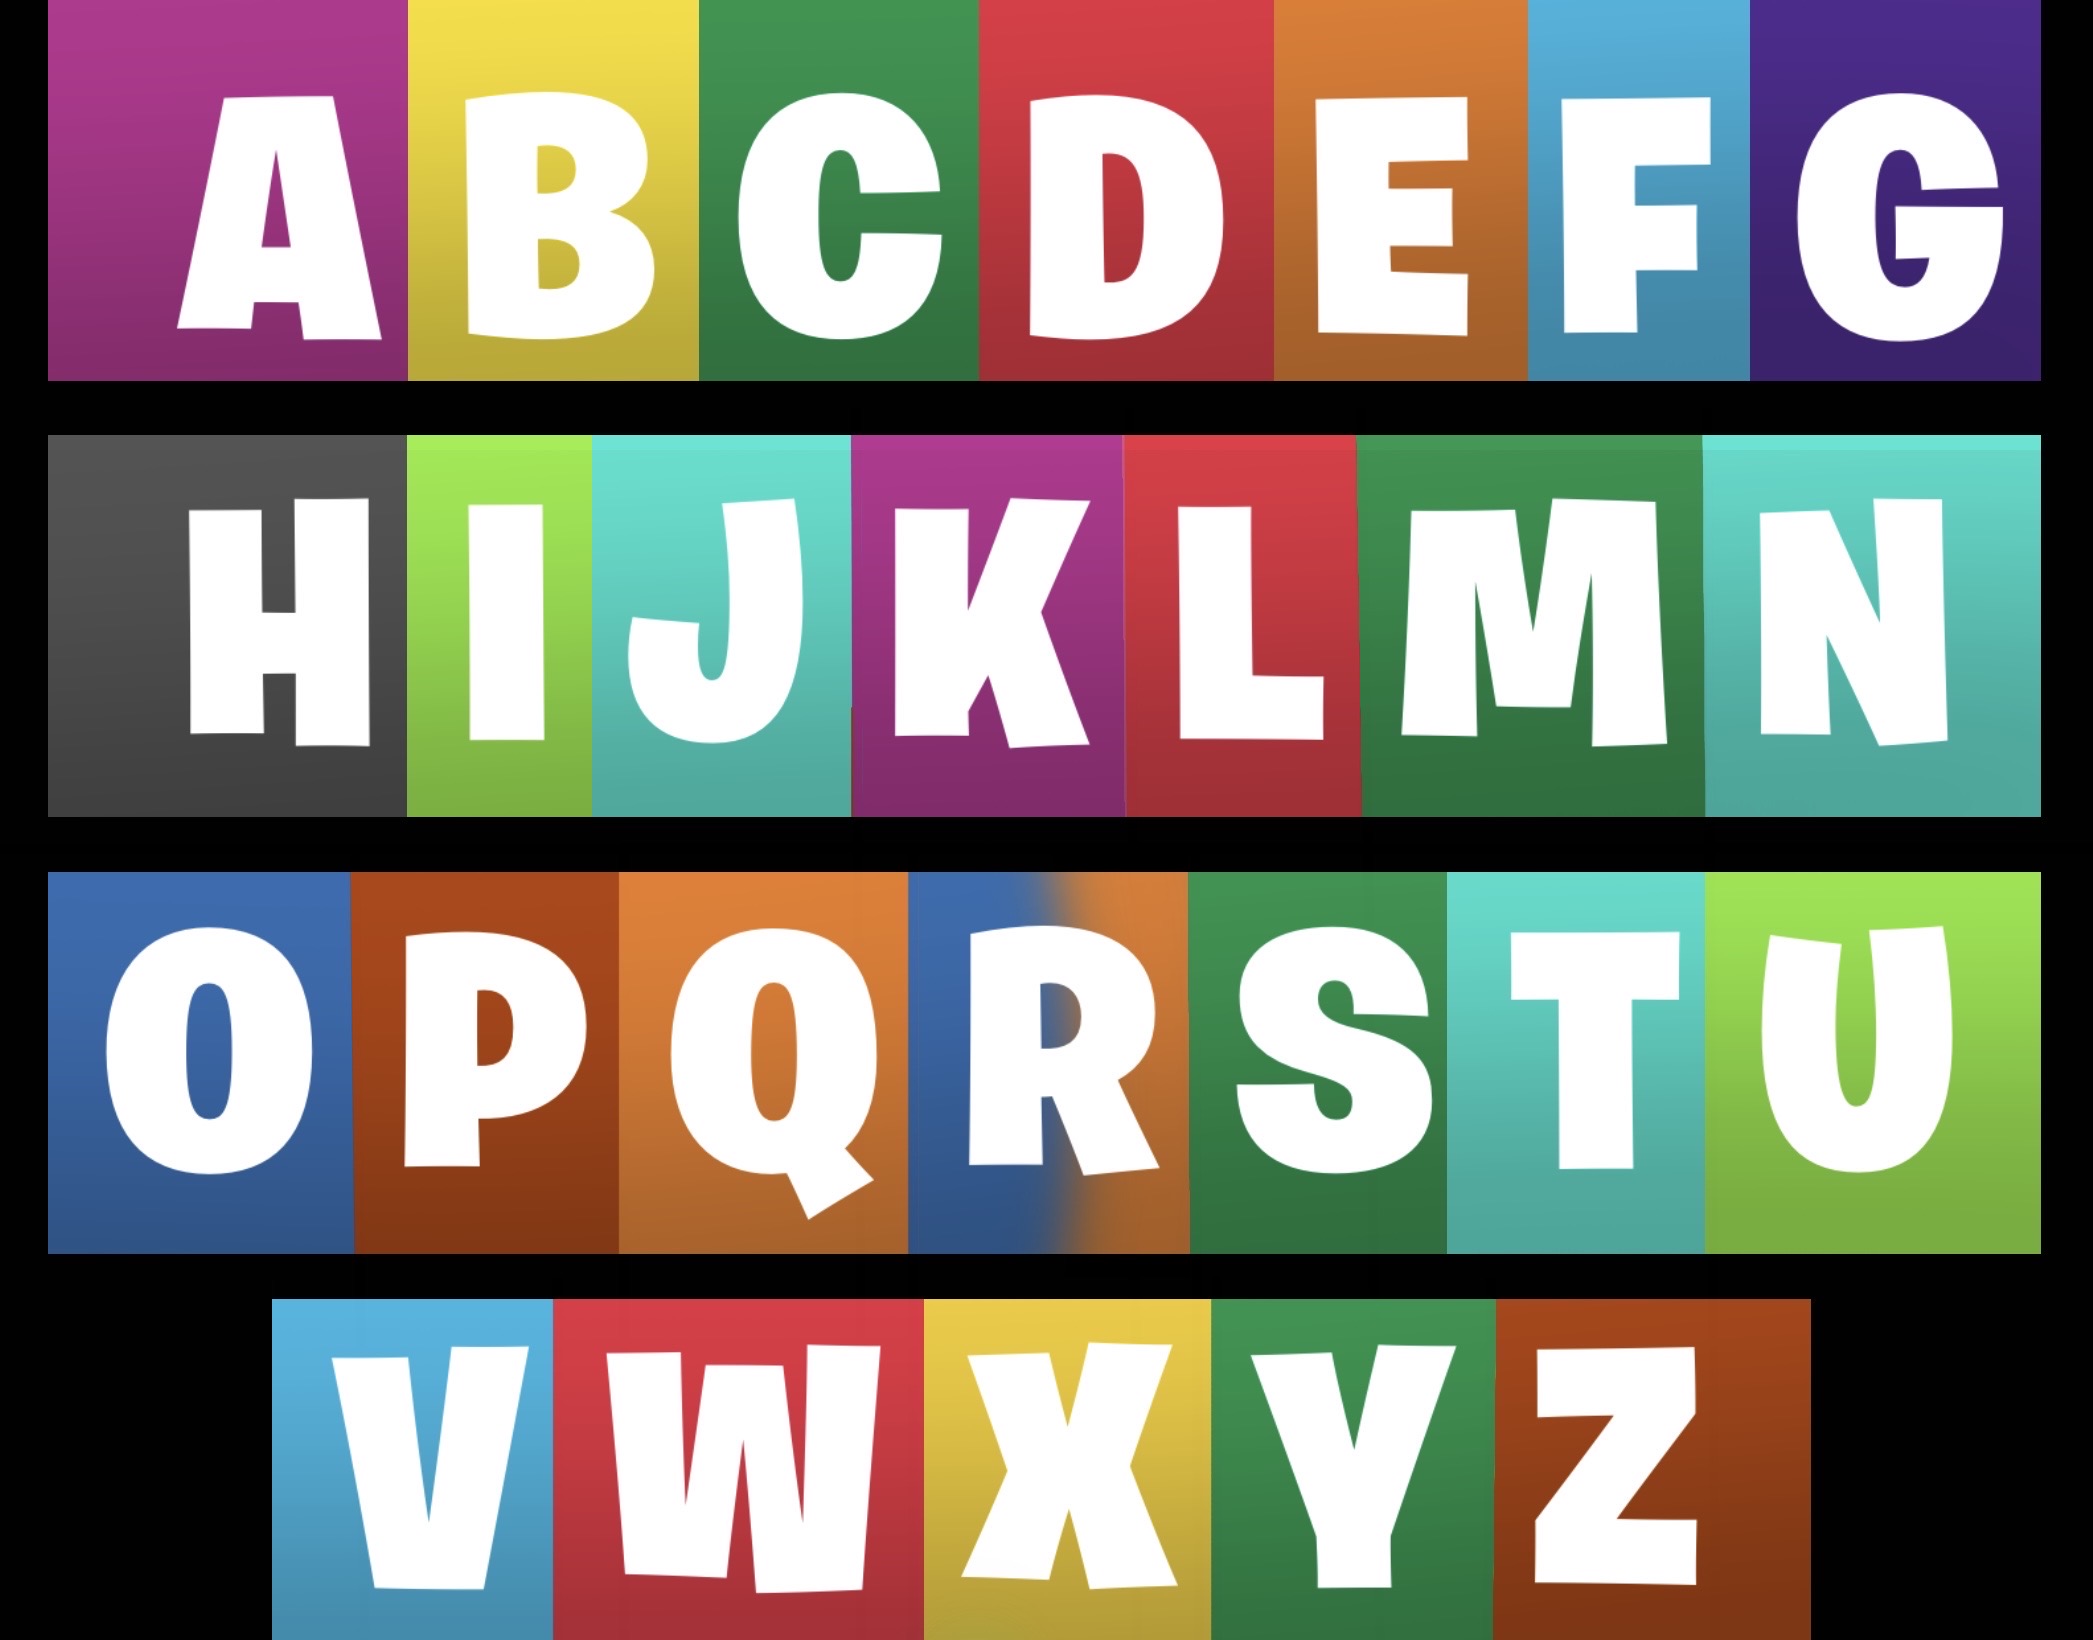 TVOkids Letters in Champion Sans Font by jesnoyers on DeviantArt